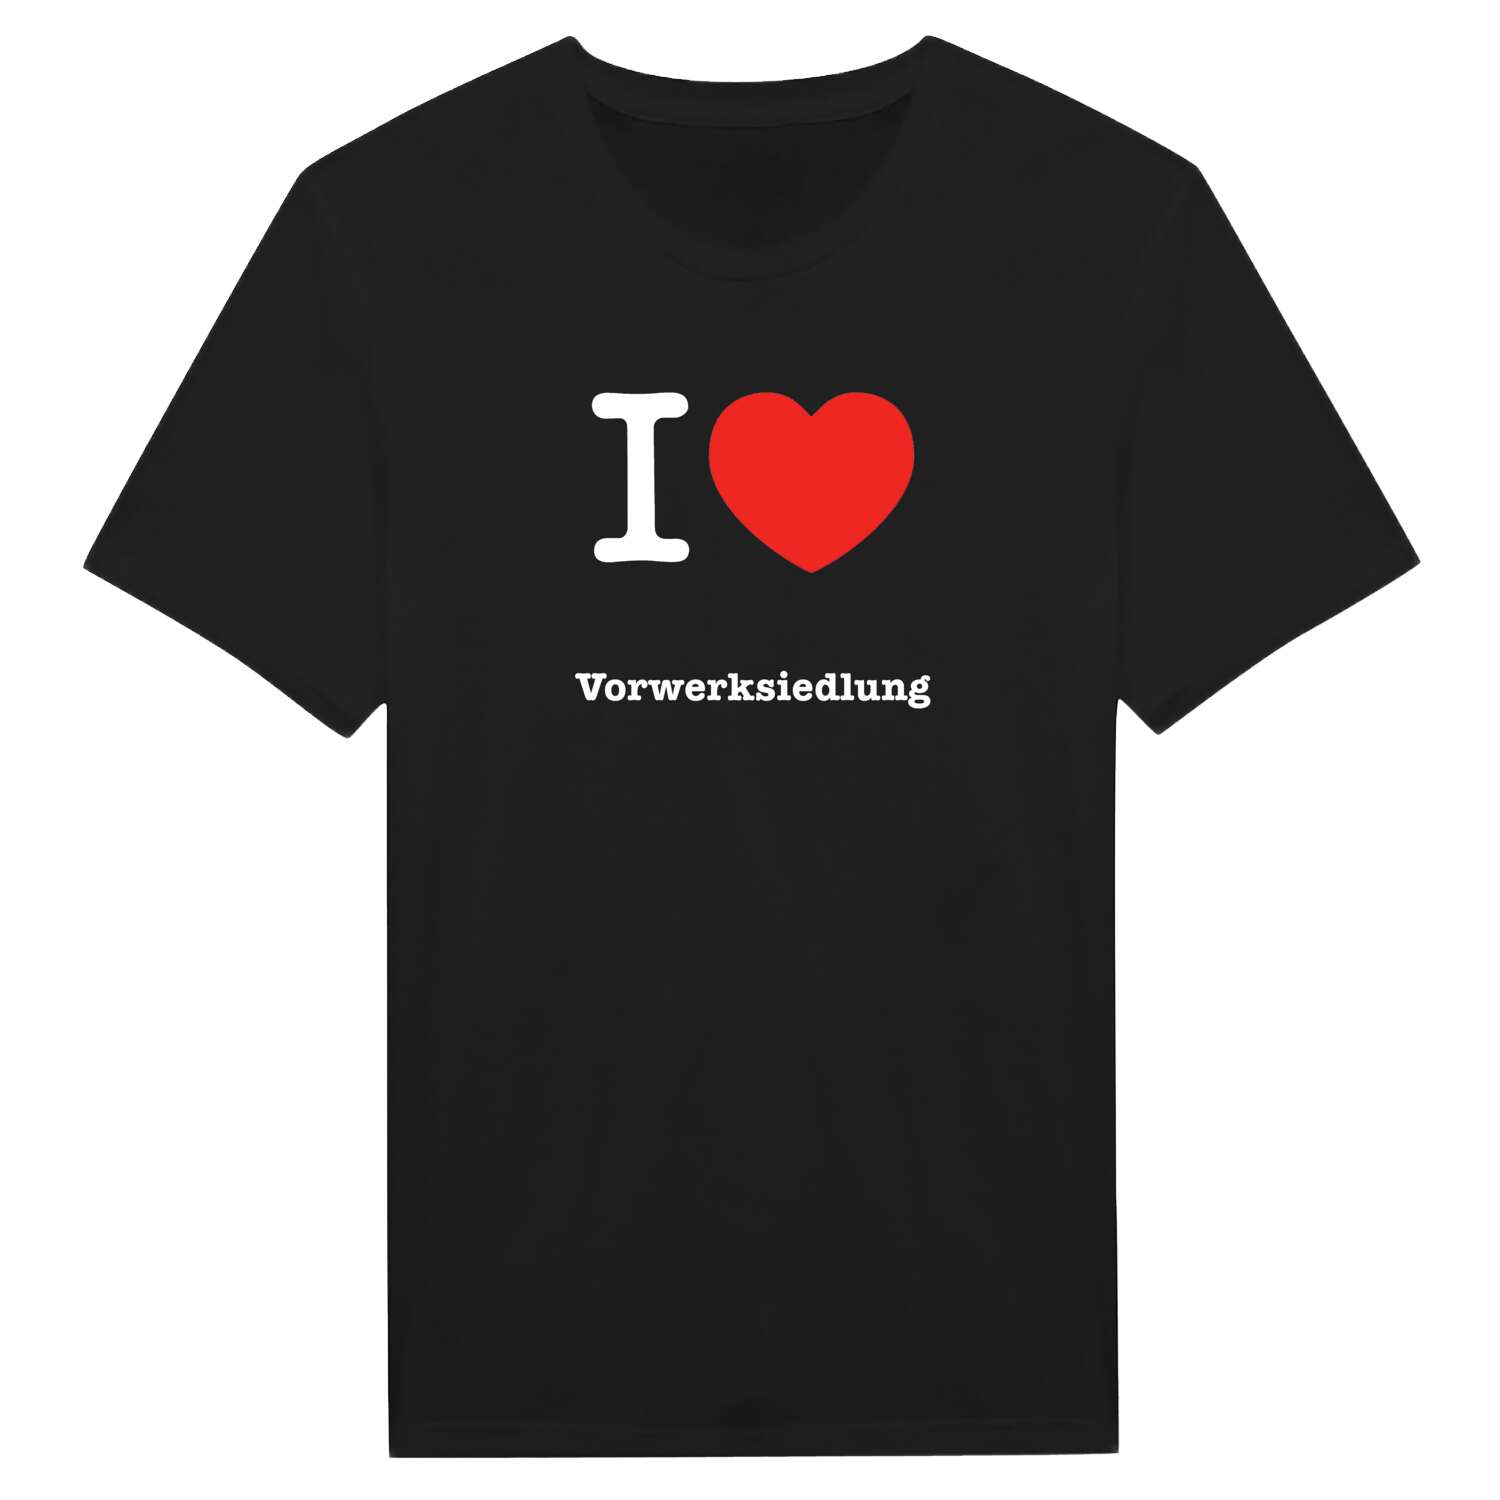 Vorwerksiedlung T-Shirt »I love«